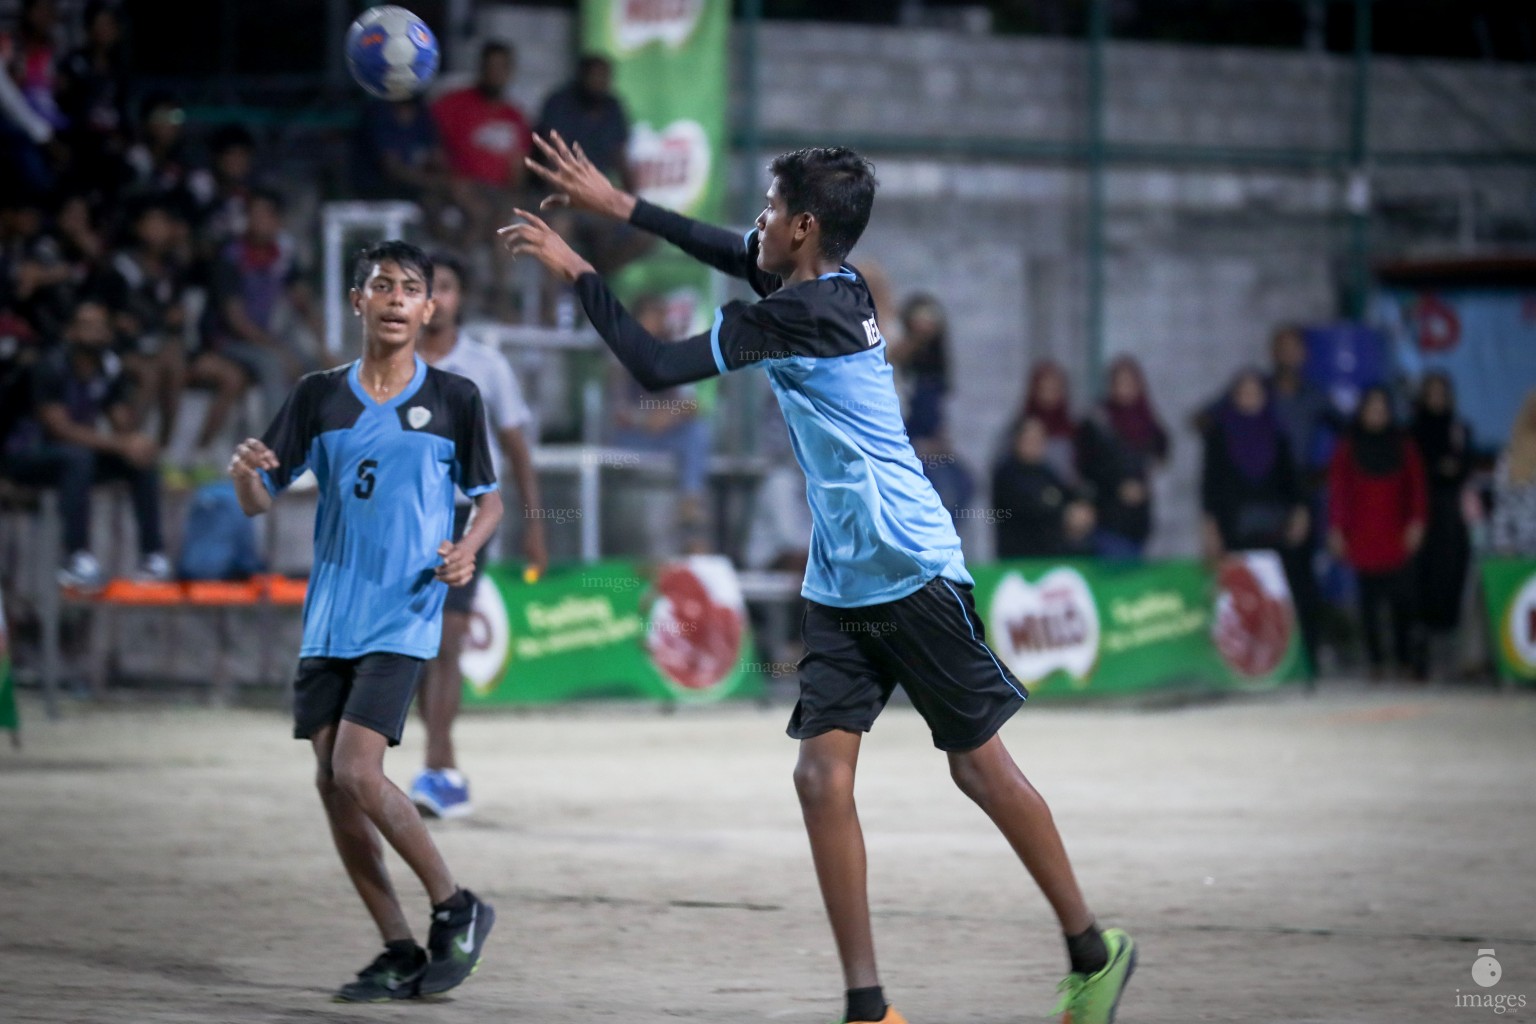 MILO Interschool Handball Tournament 2018 (U16 Semi Finals)